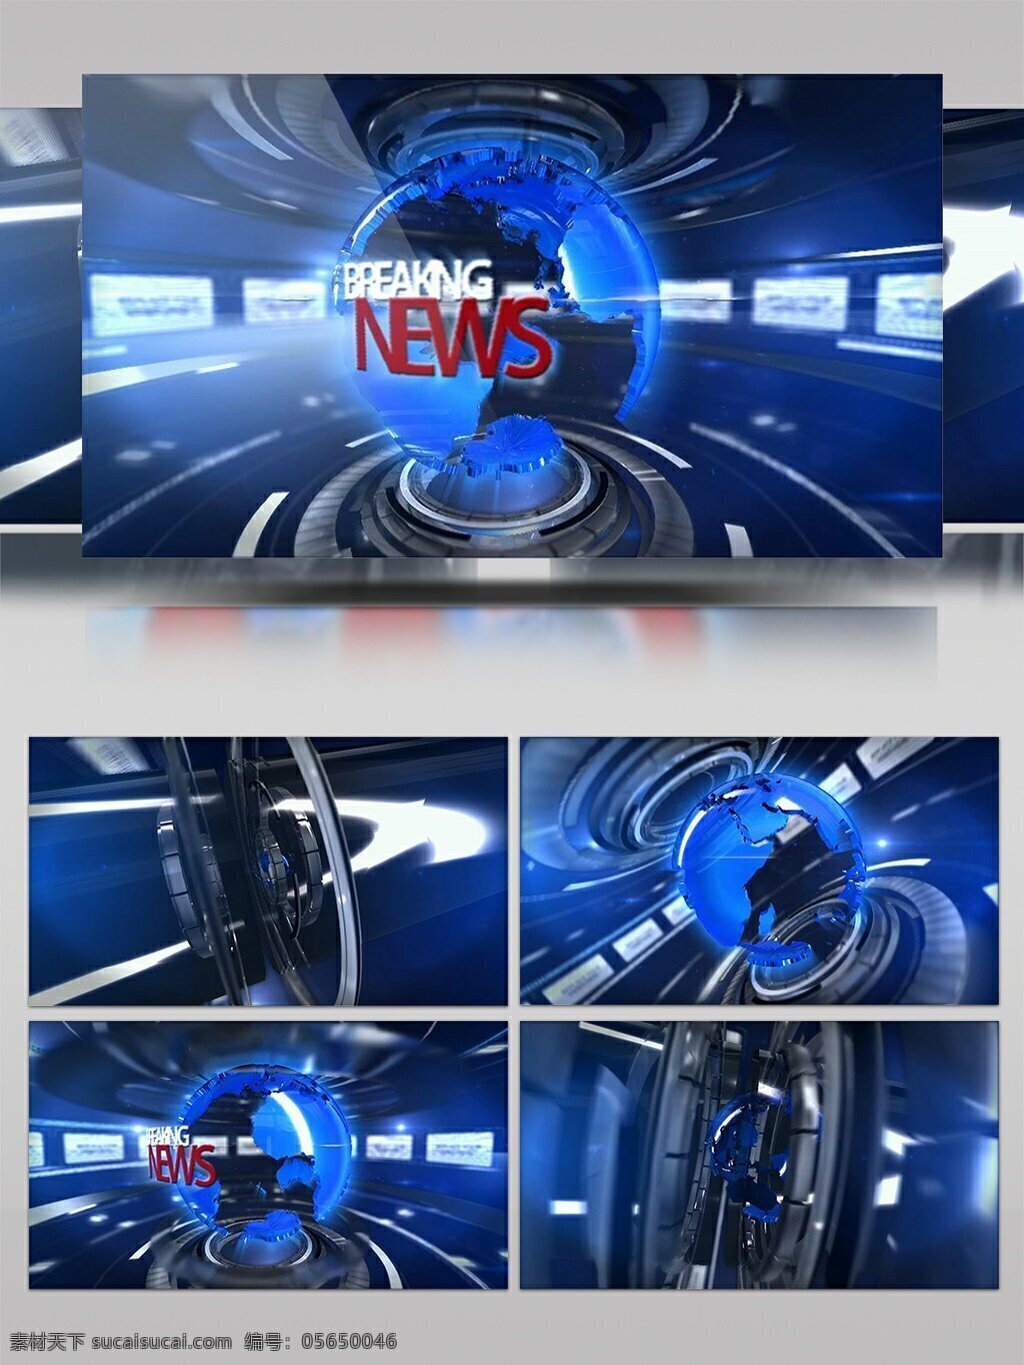 高端 科技 tv 广播 新闻 小时 包装 ae 模板 电视 展示 开场 合成 栏目